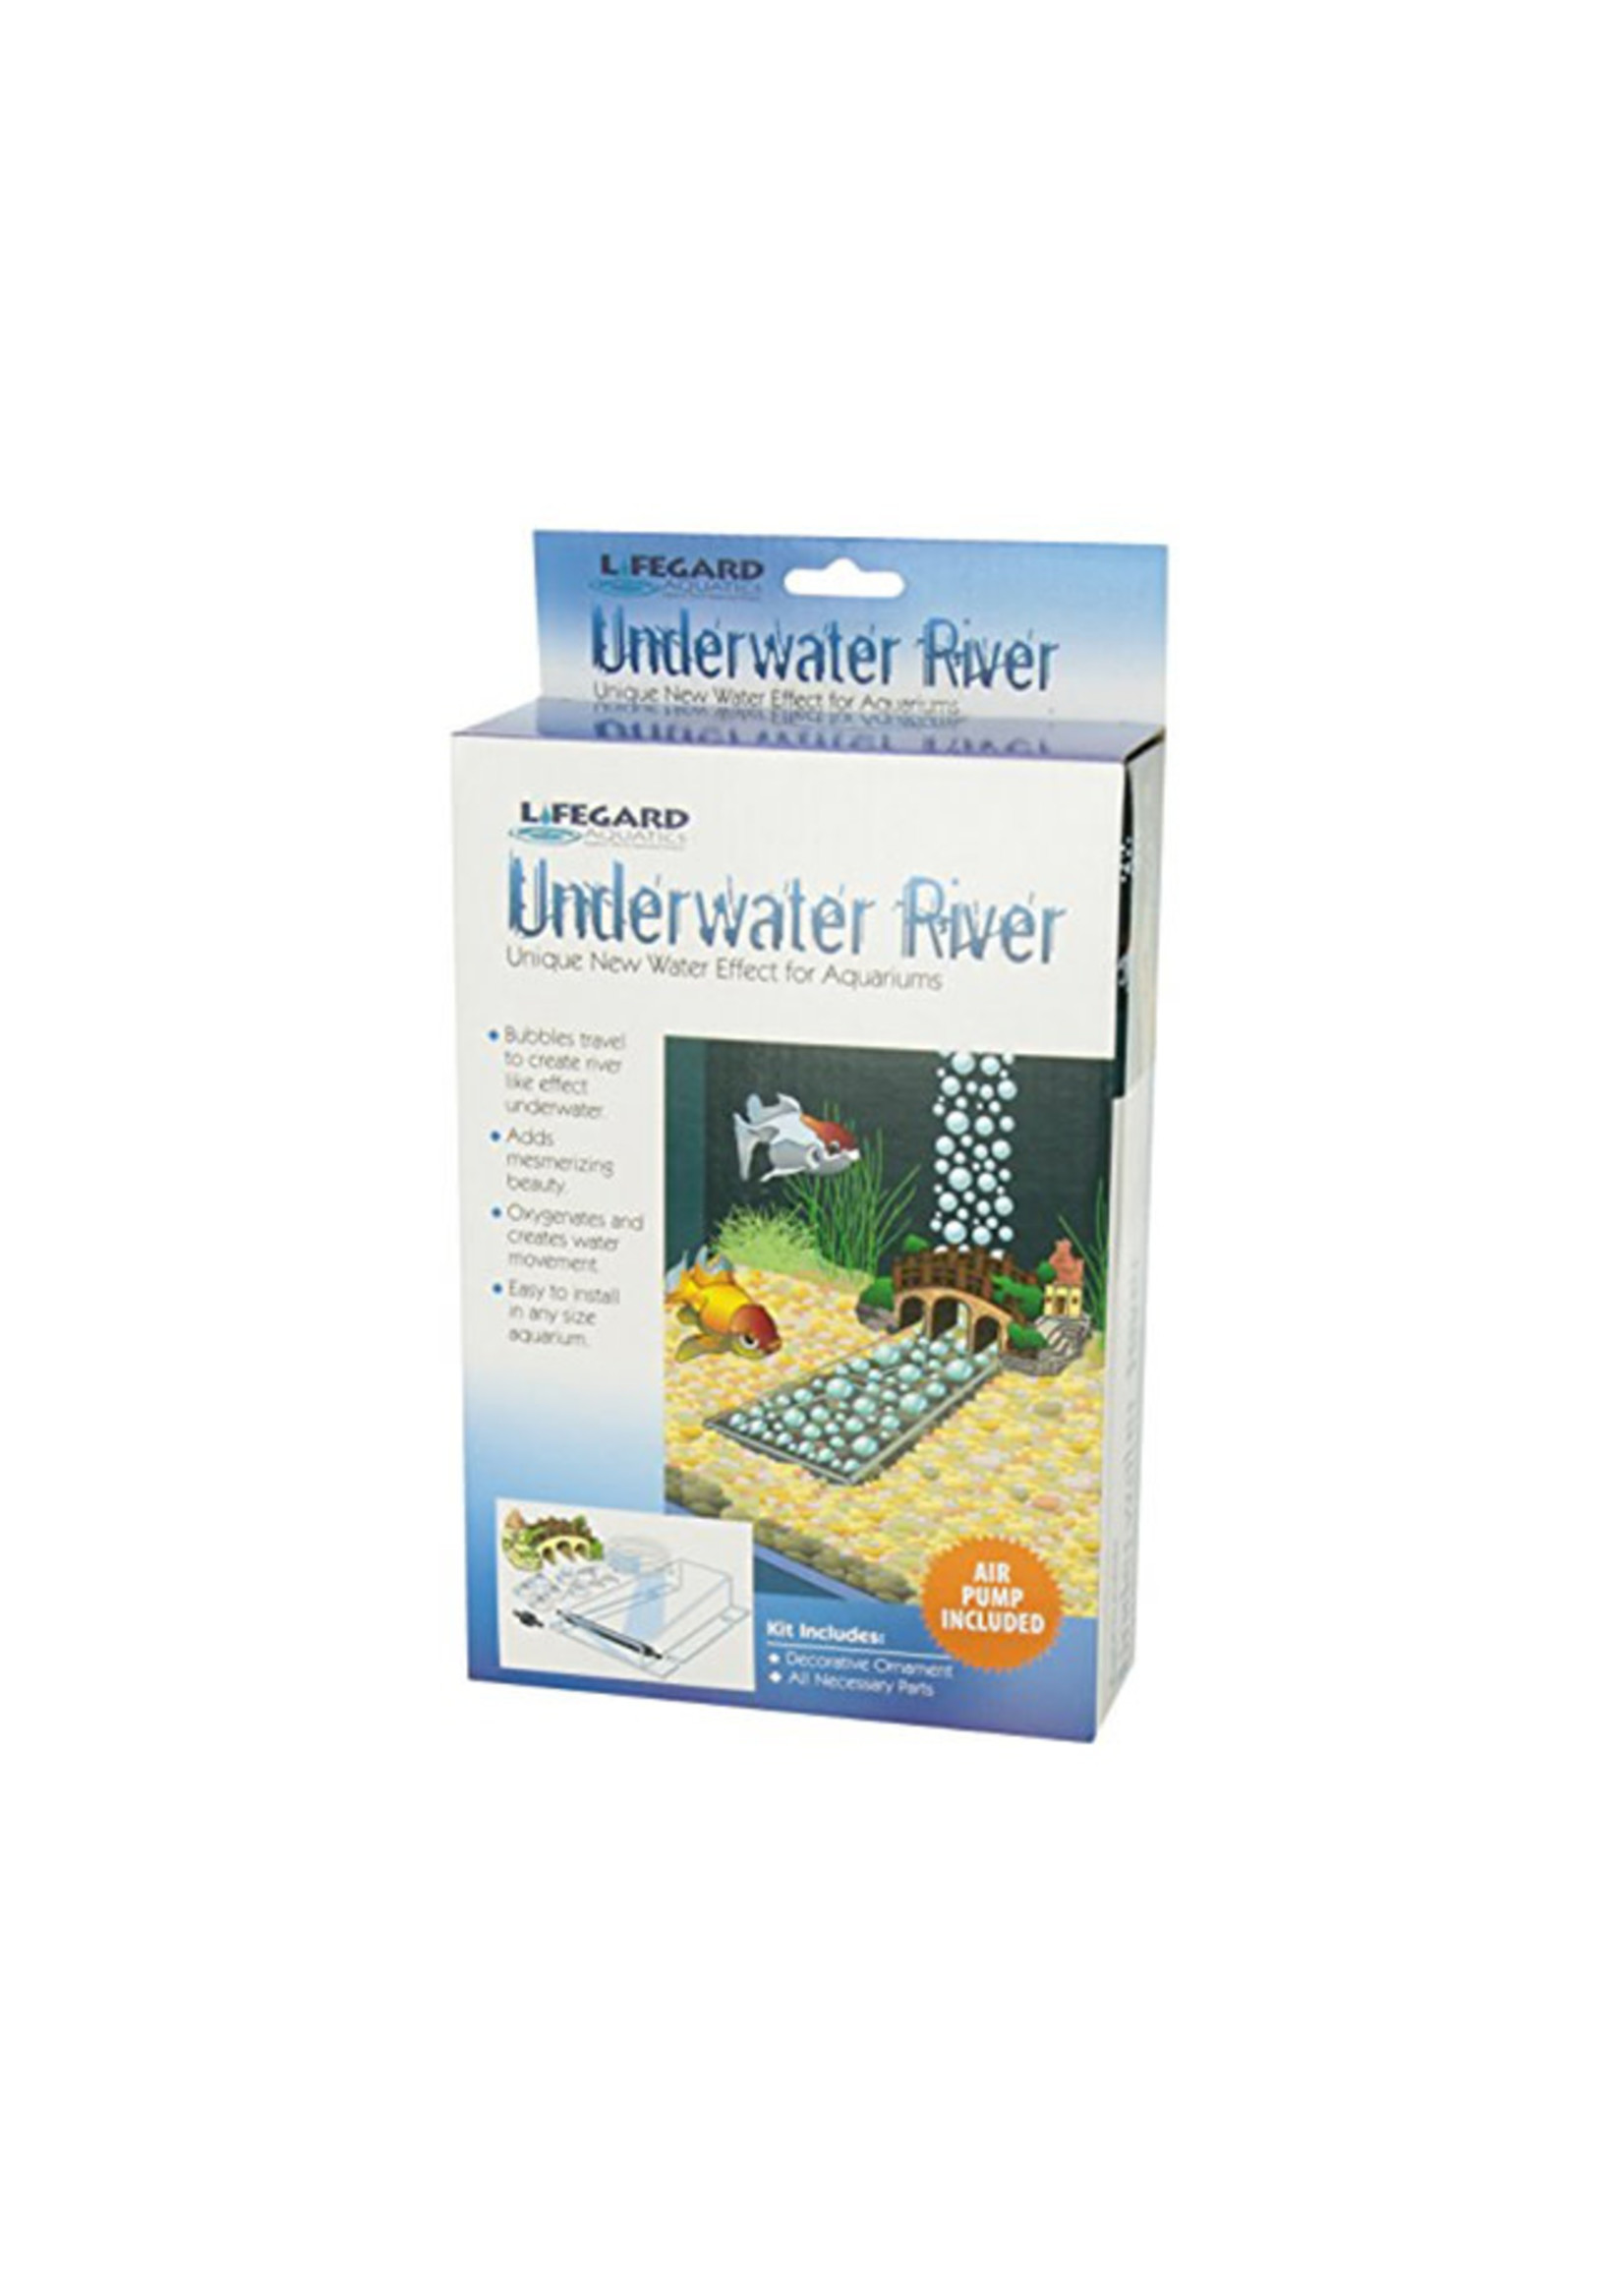 Lifegard Aquatics Lifegard Underwater River with Air Pump